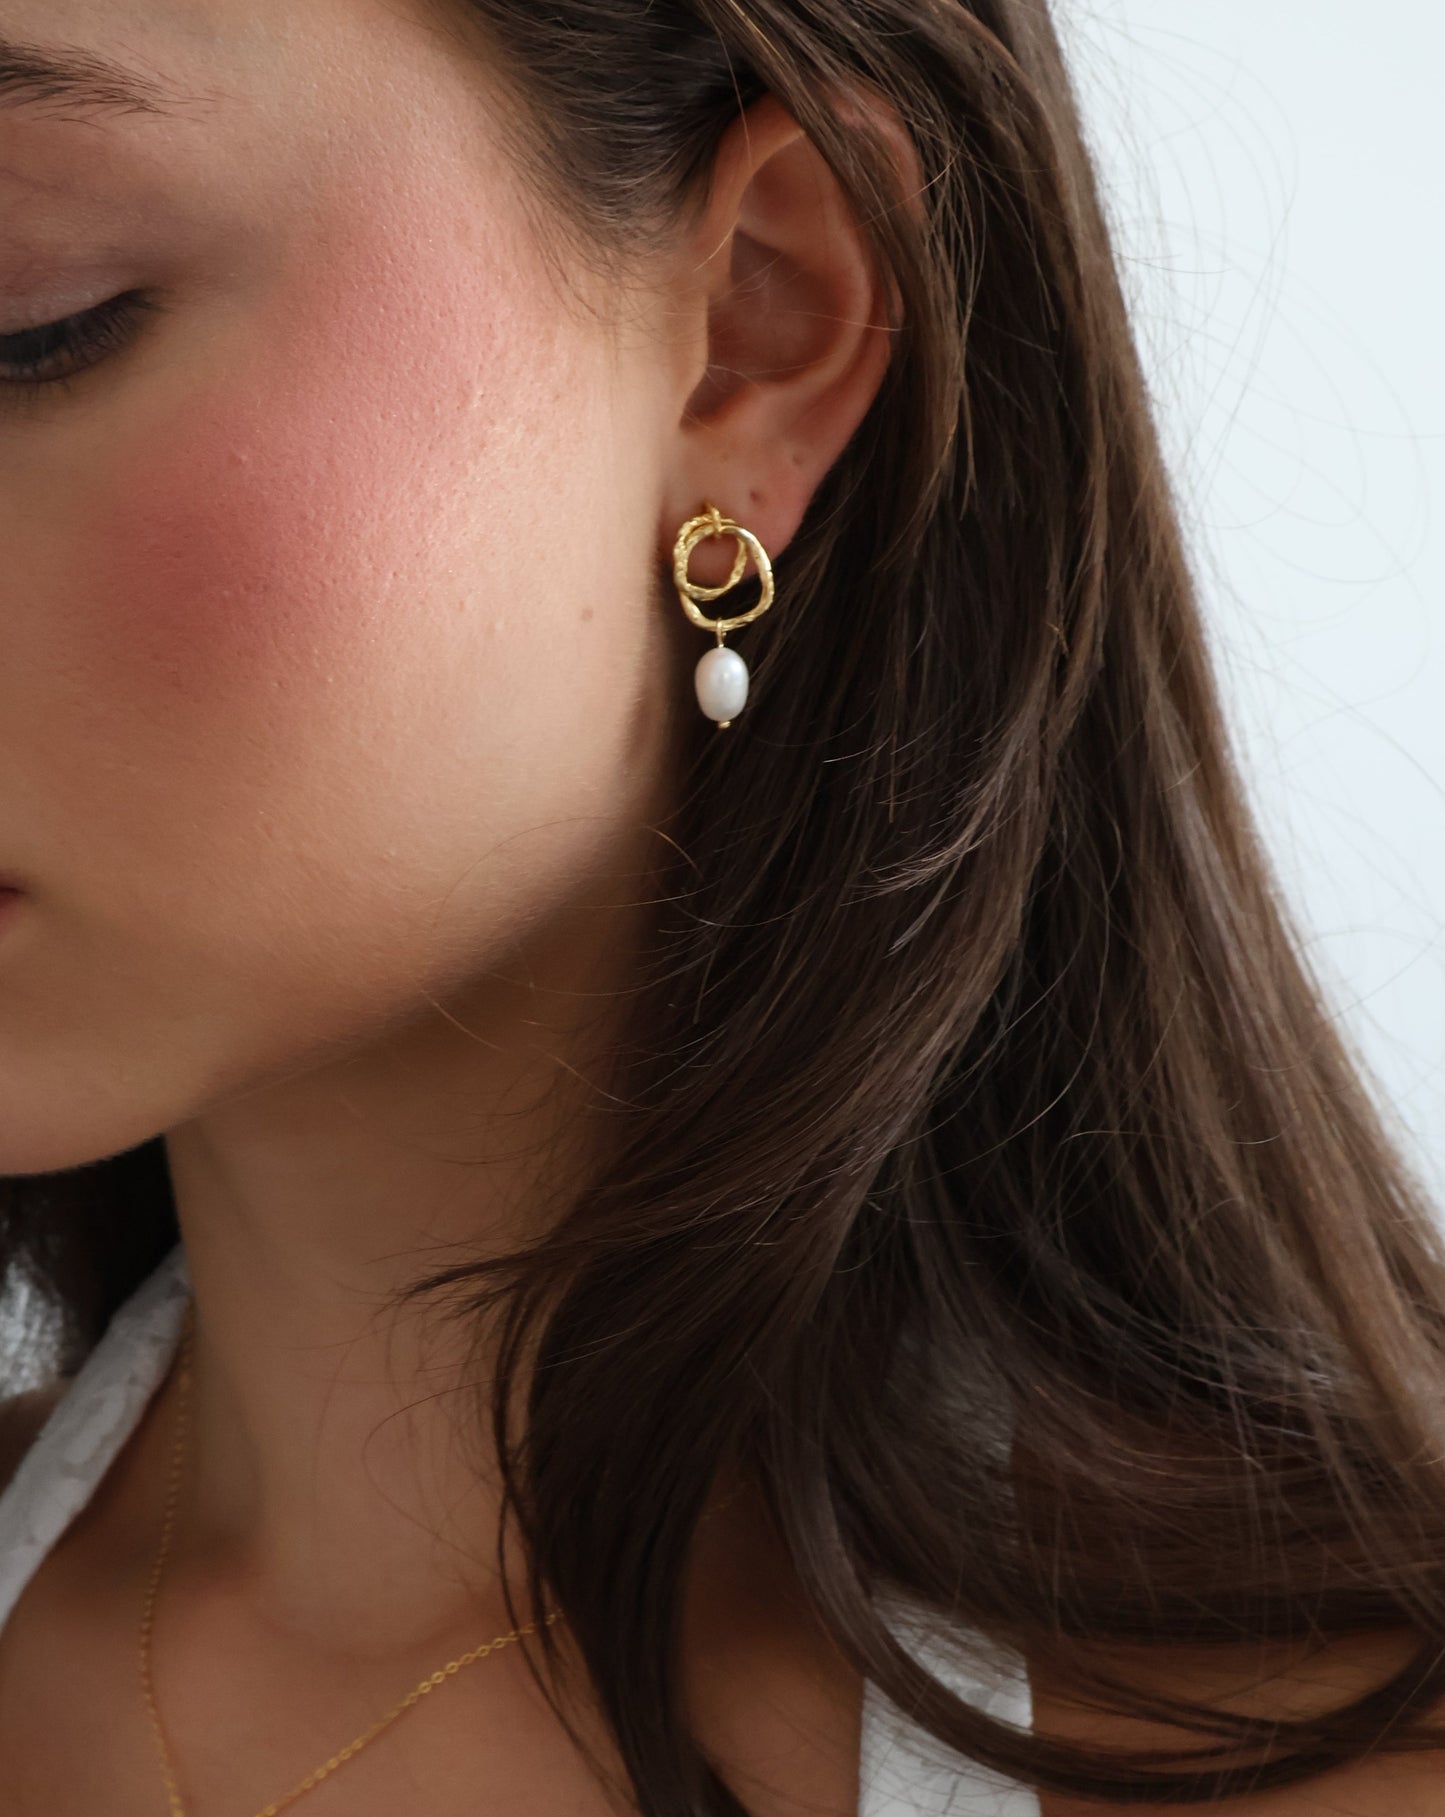 Claudia earrings